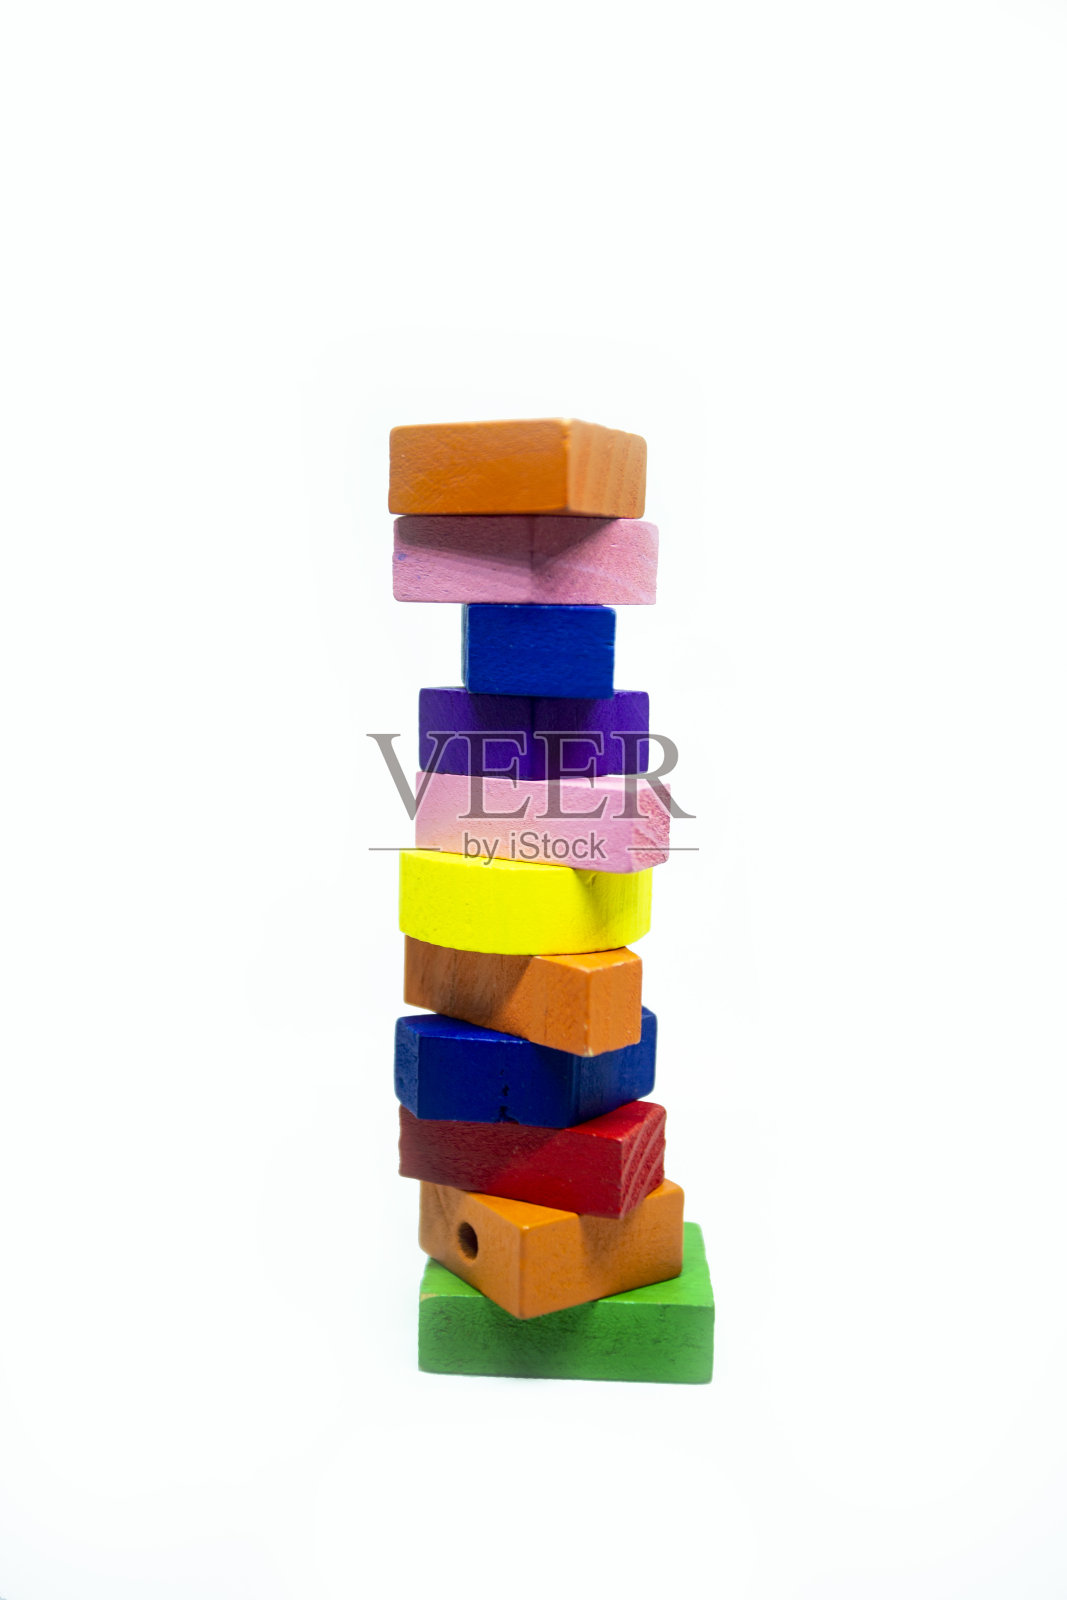 儿童玩具的木块是按照物体形状的顺序排列的照片摄影图片